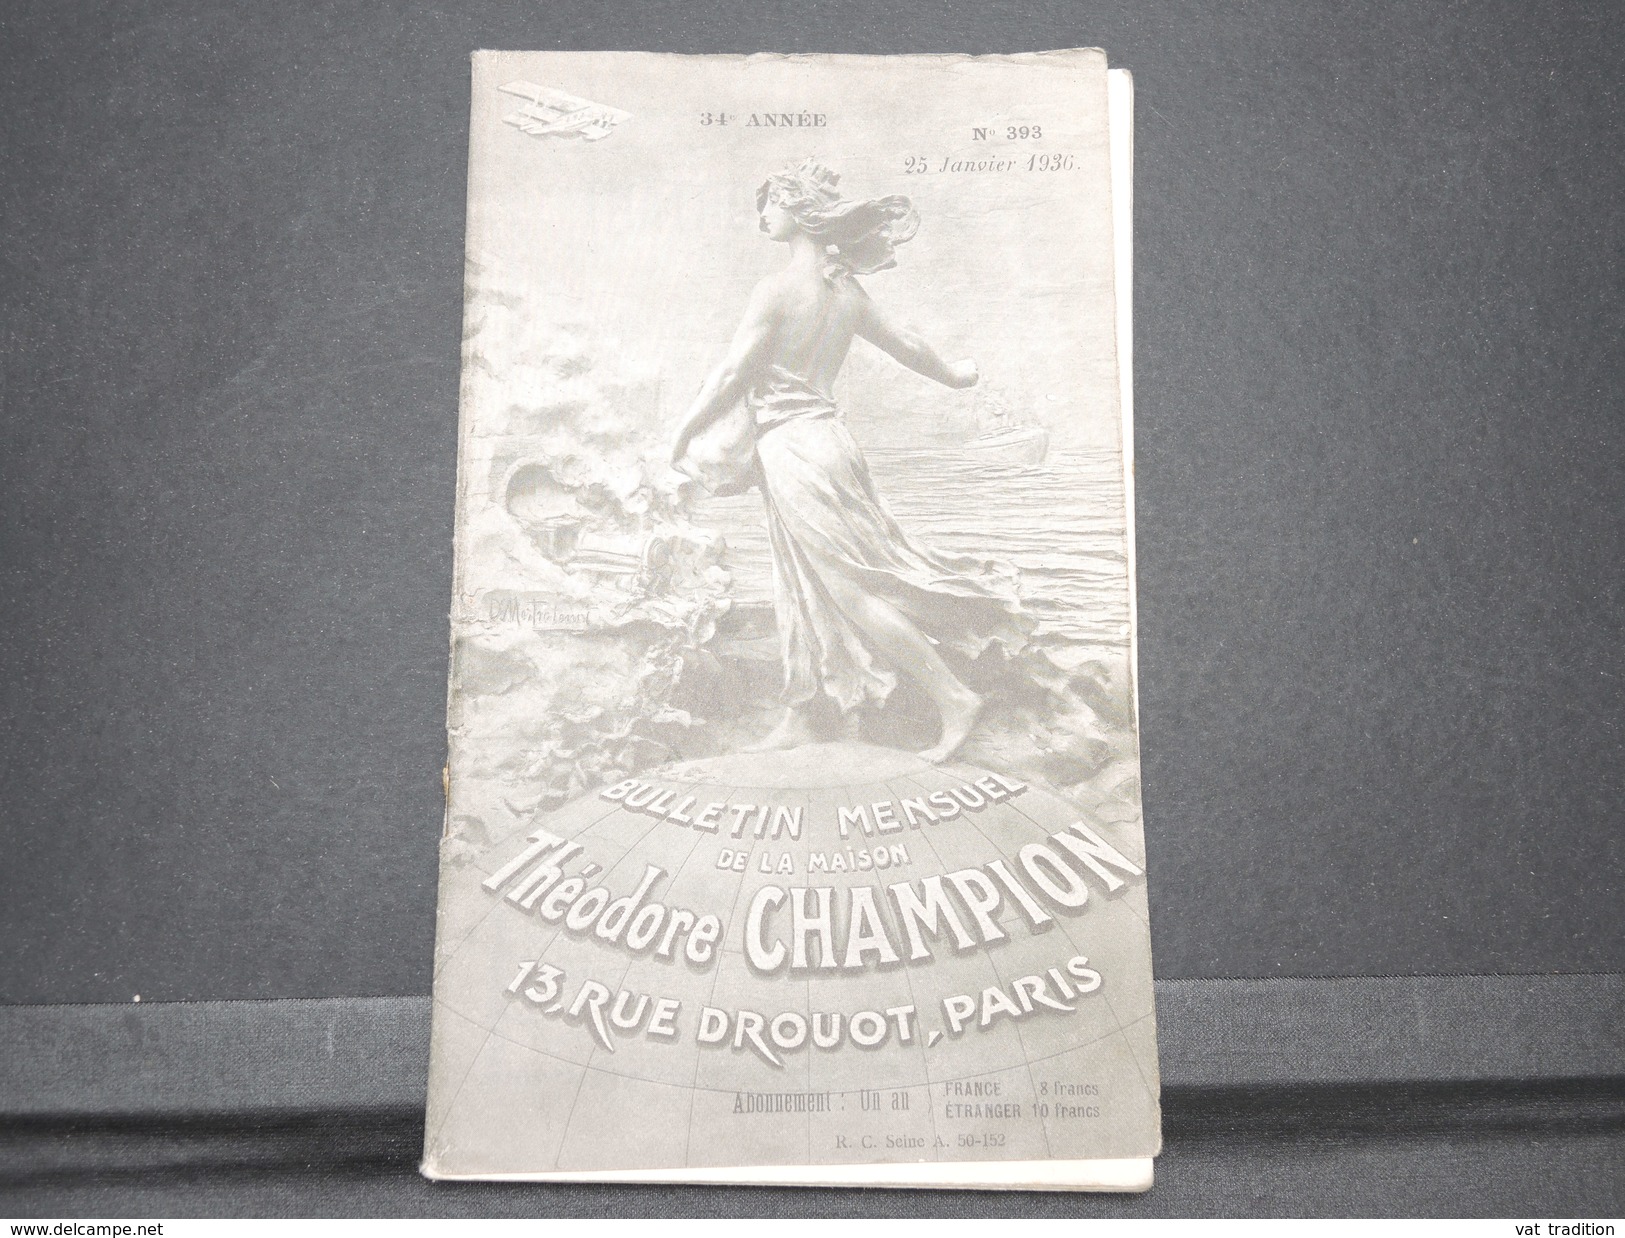 FRANCE - Bulletin Mensuel De La Maison Champion En 1936 - L 7988 - Catalogues For Auction Houses